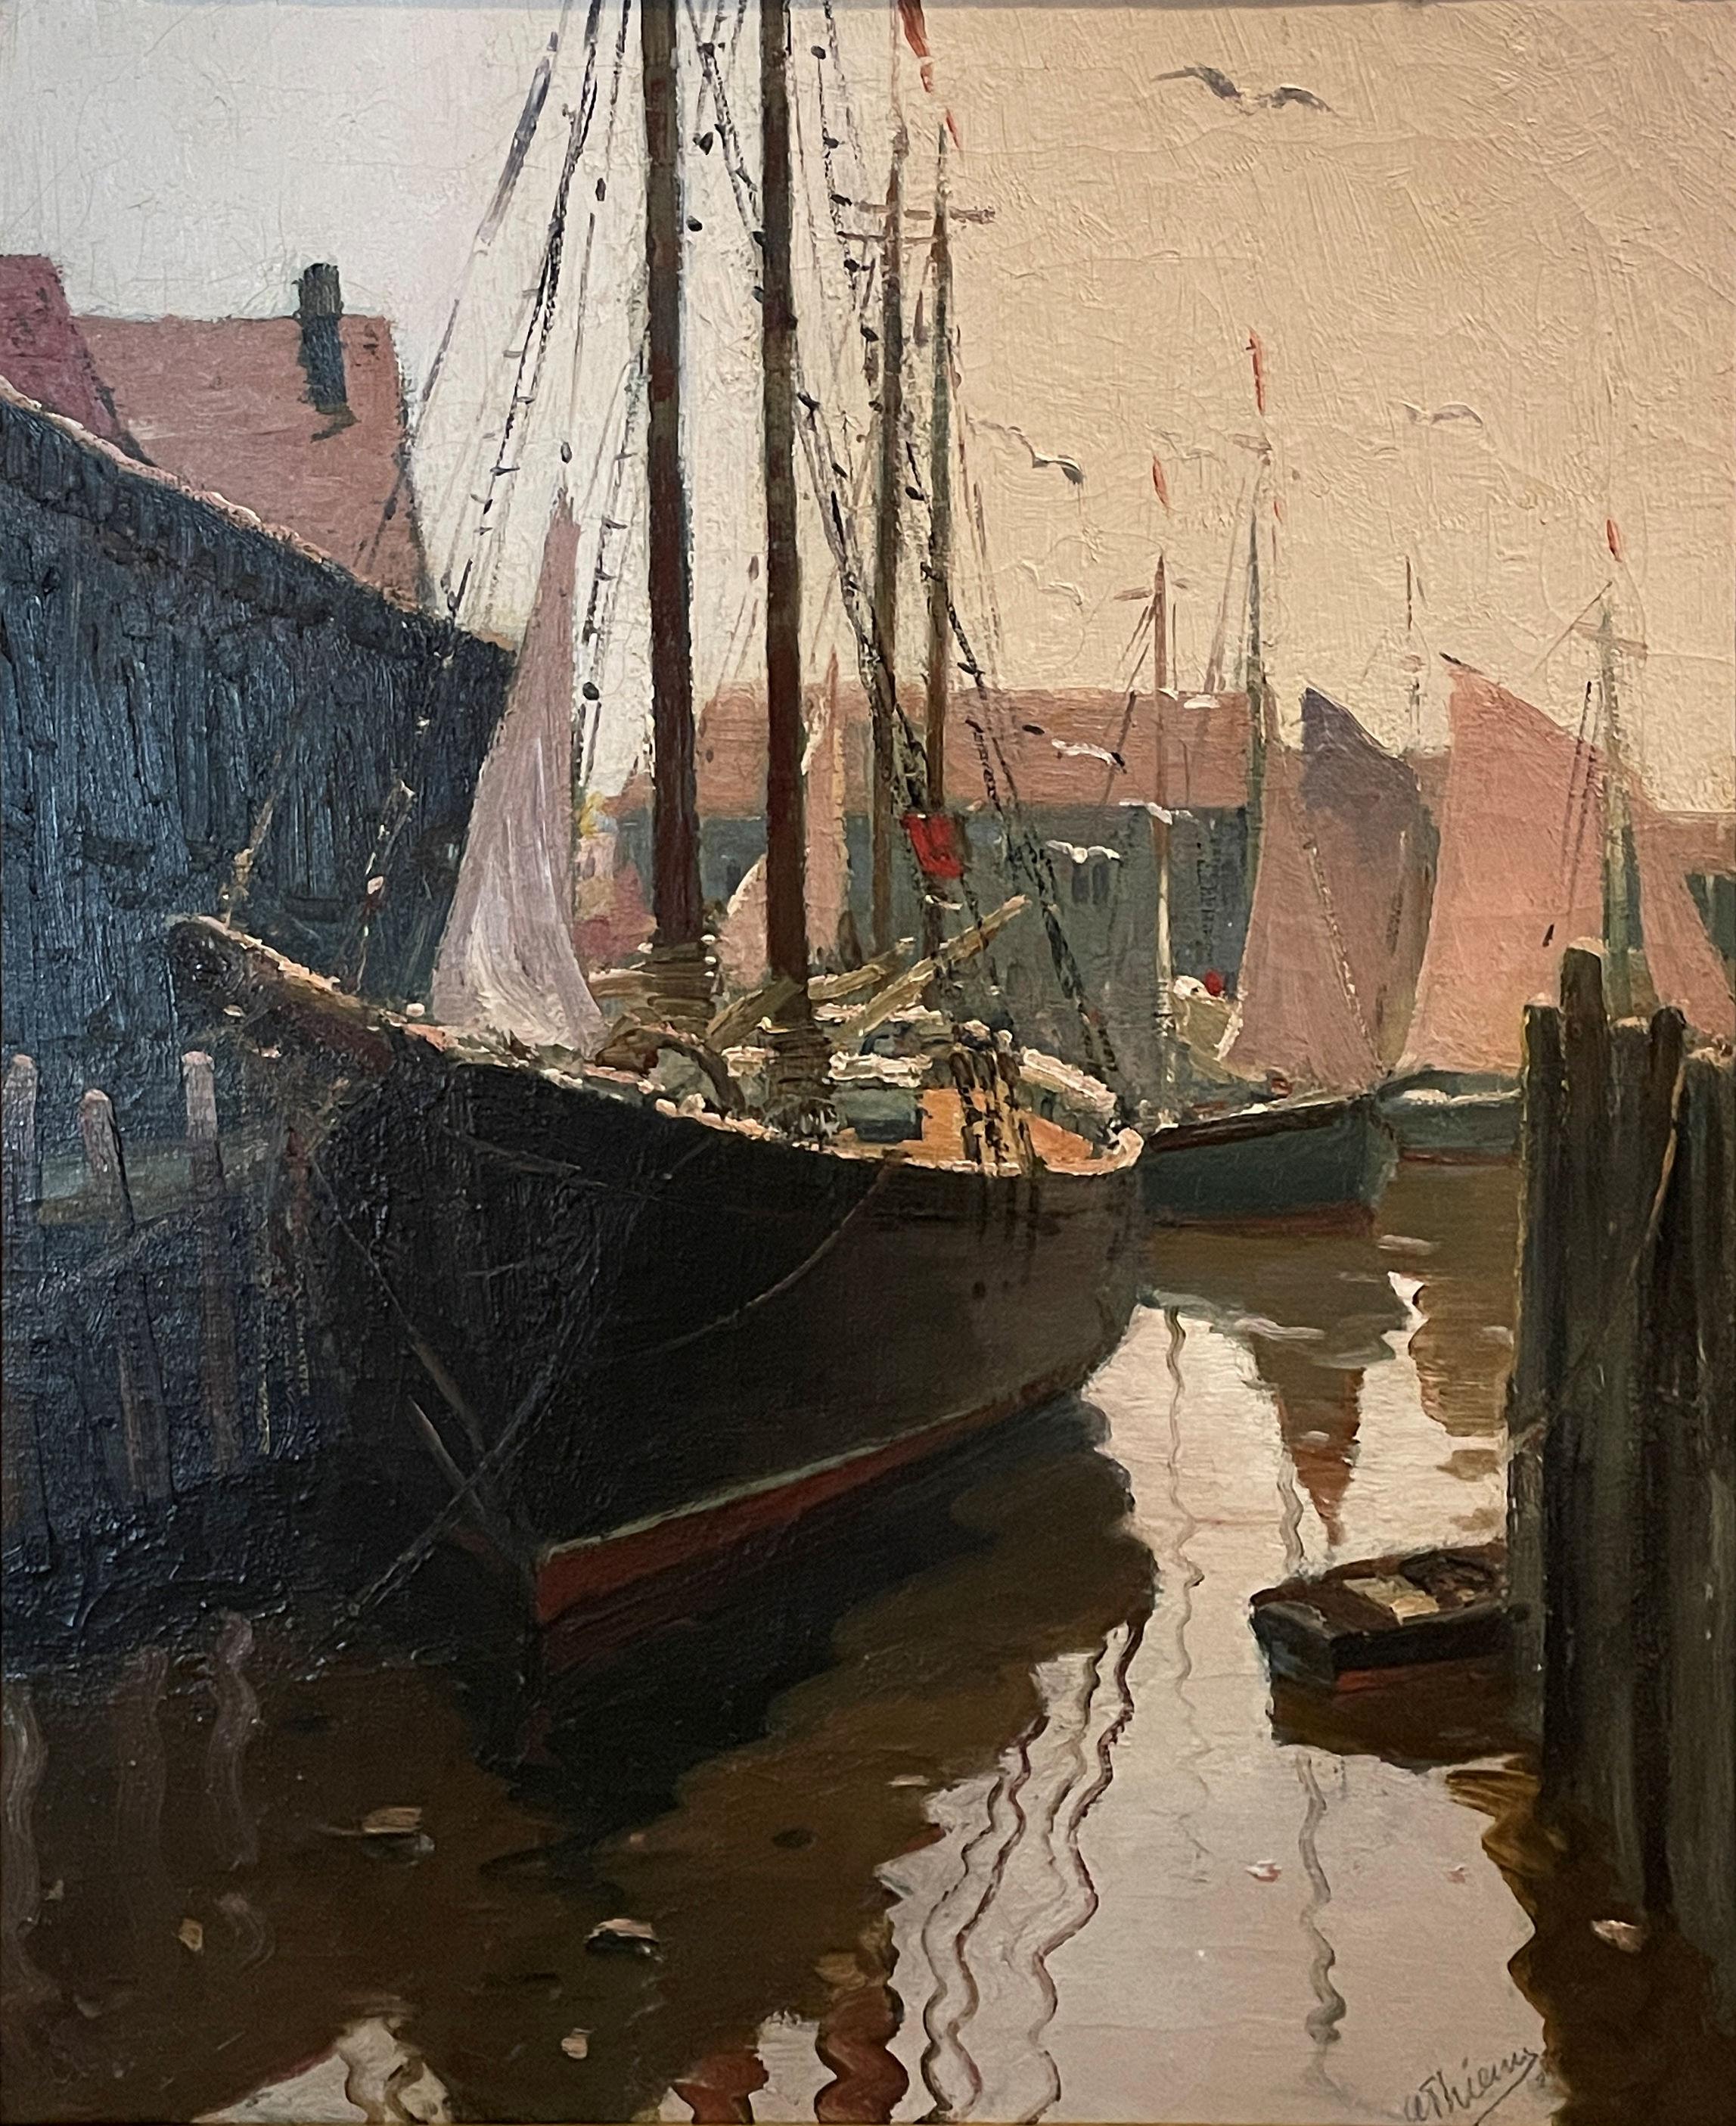 Anthony Thieme
Bateau démantelé
Signé en bas à droite
Huile sur toile
30 x 25 pouces

Anthony Thieme est né dans la ville portuaire néerlandaise de Rotterdam en 1888. Il a étudié à l'Académie des beaux-arts de Rotterdam, à l'Académie royale de La